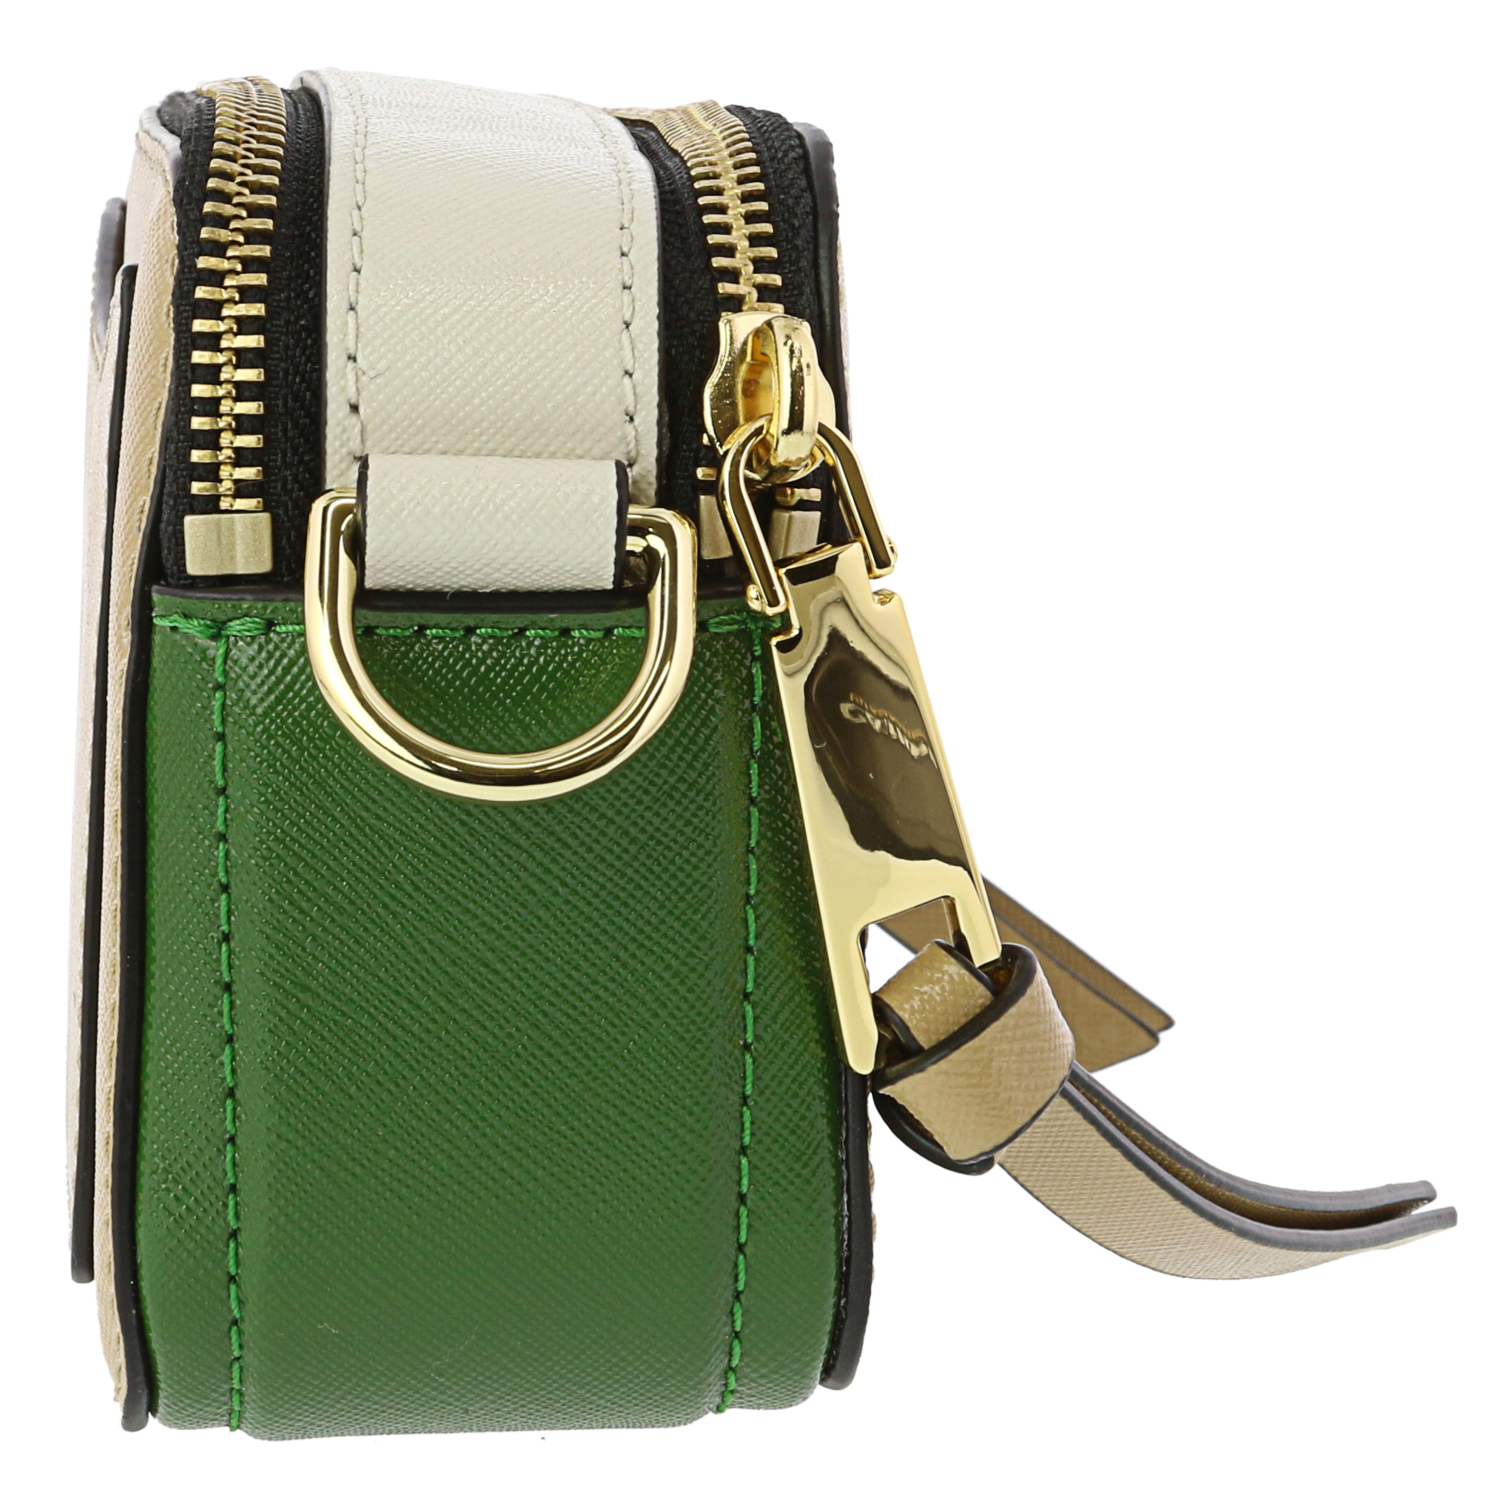 Marc Jacobs Snapshot Leather Shoulder Bag | eBay